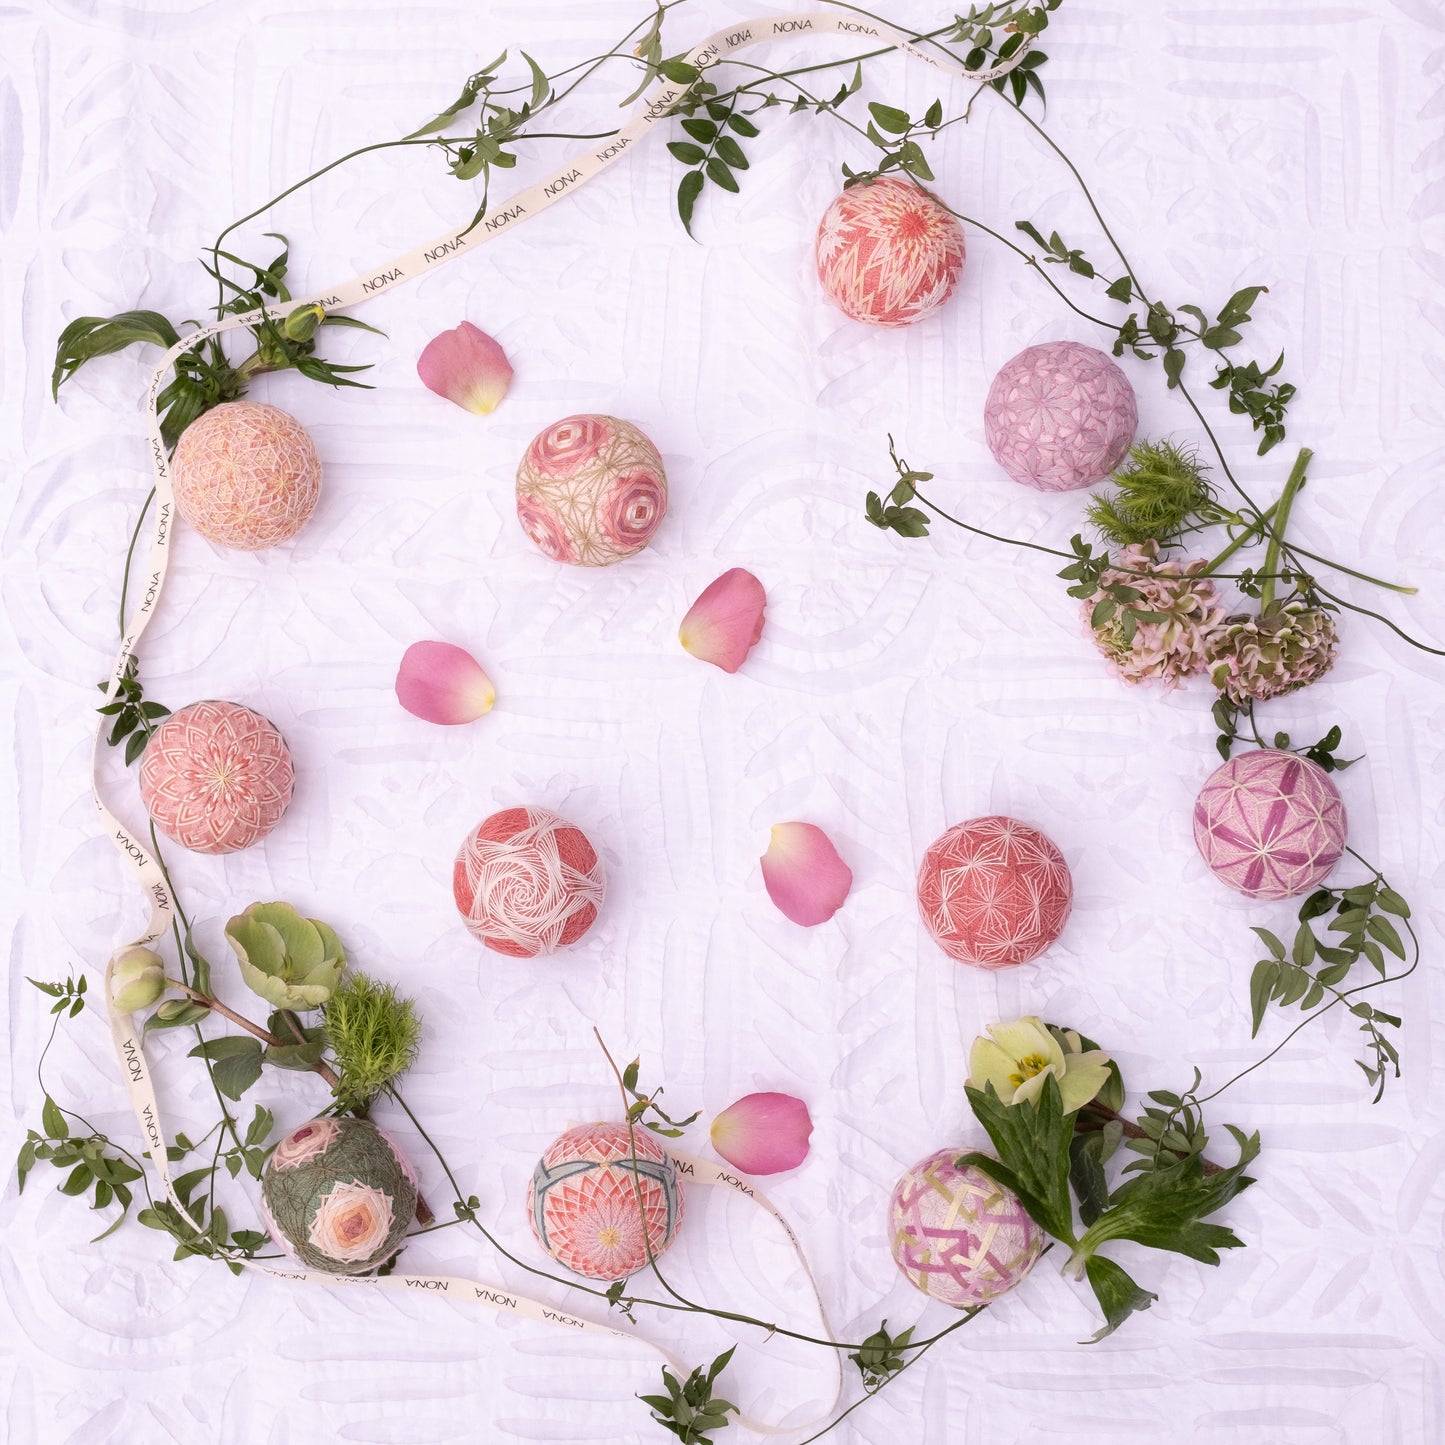 『ピンクバラの花言葉「感謝」』 - Temari Bouquet "春の舞"